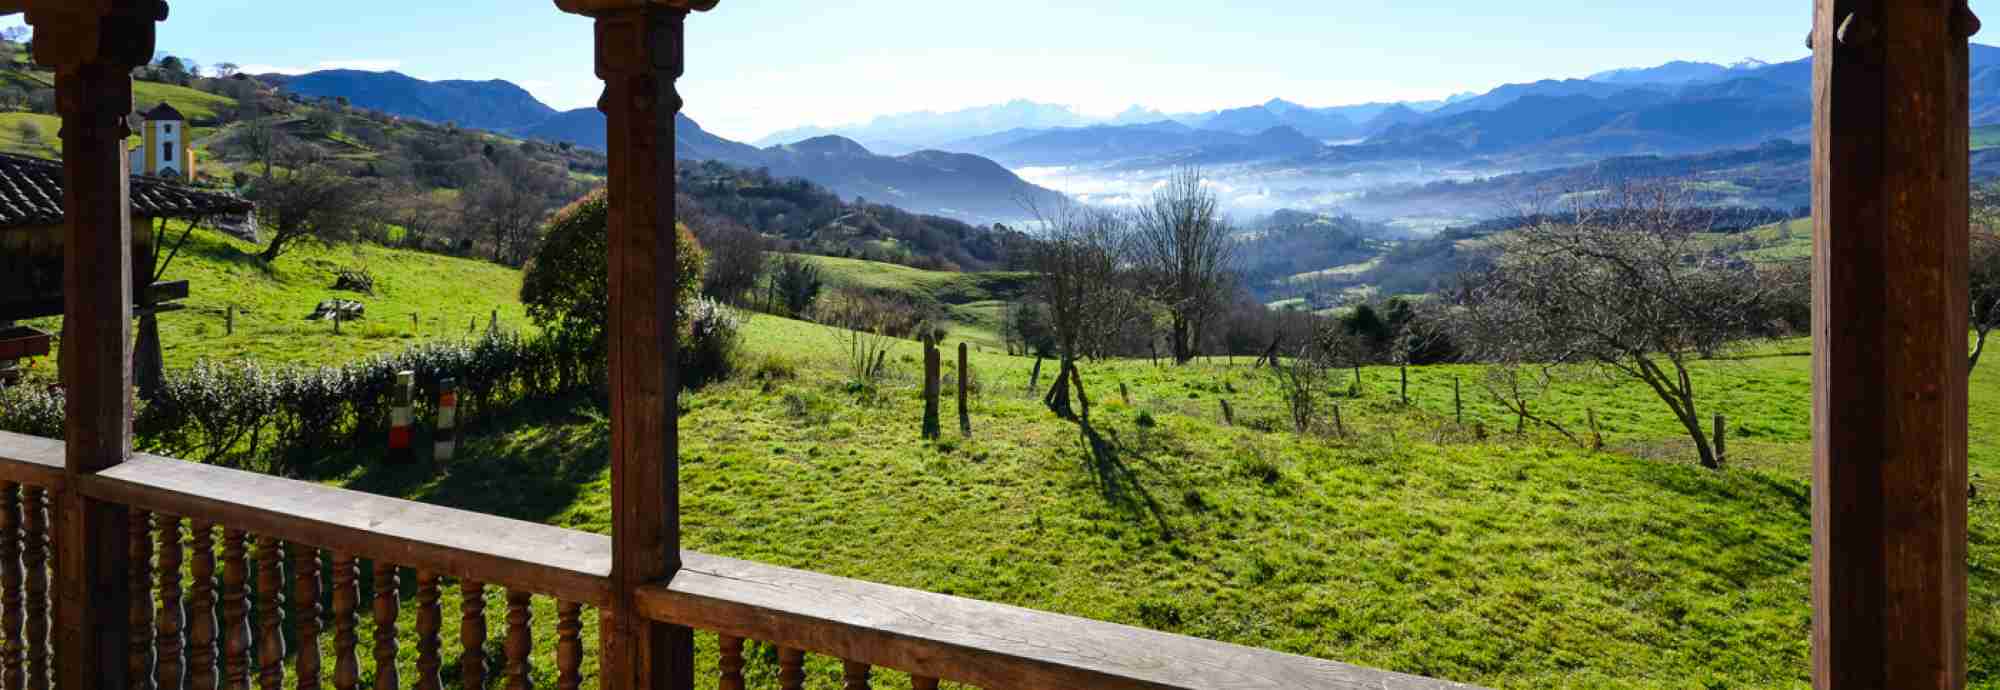 Vintage holiday rental property in Asturias, Northern Spain